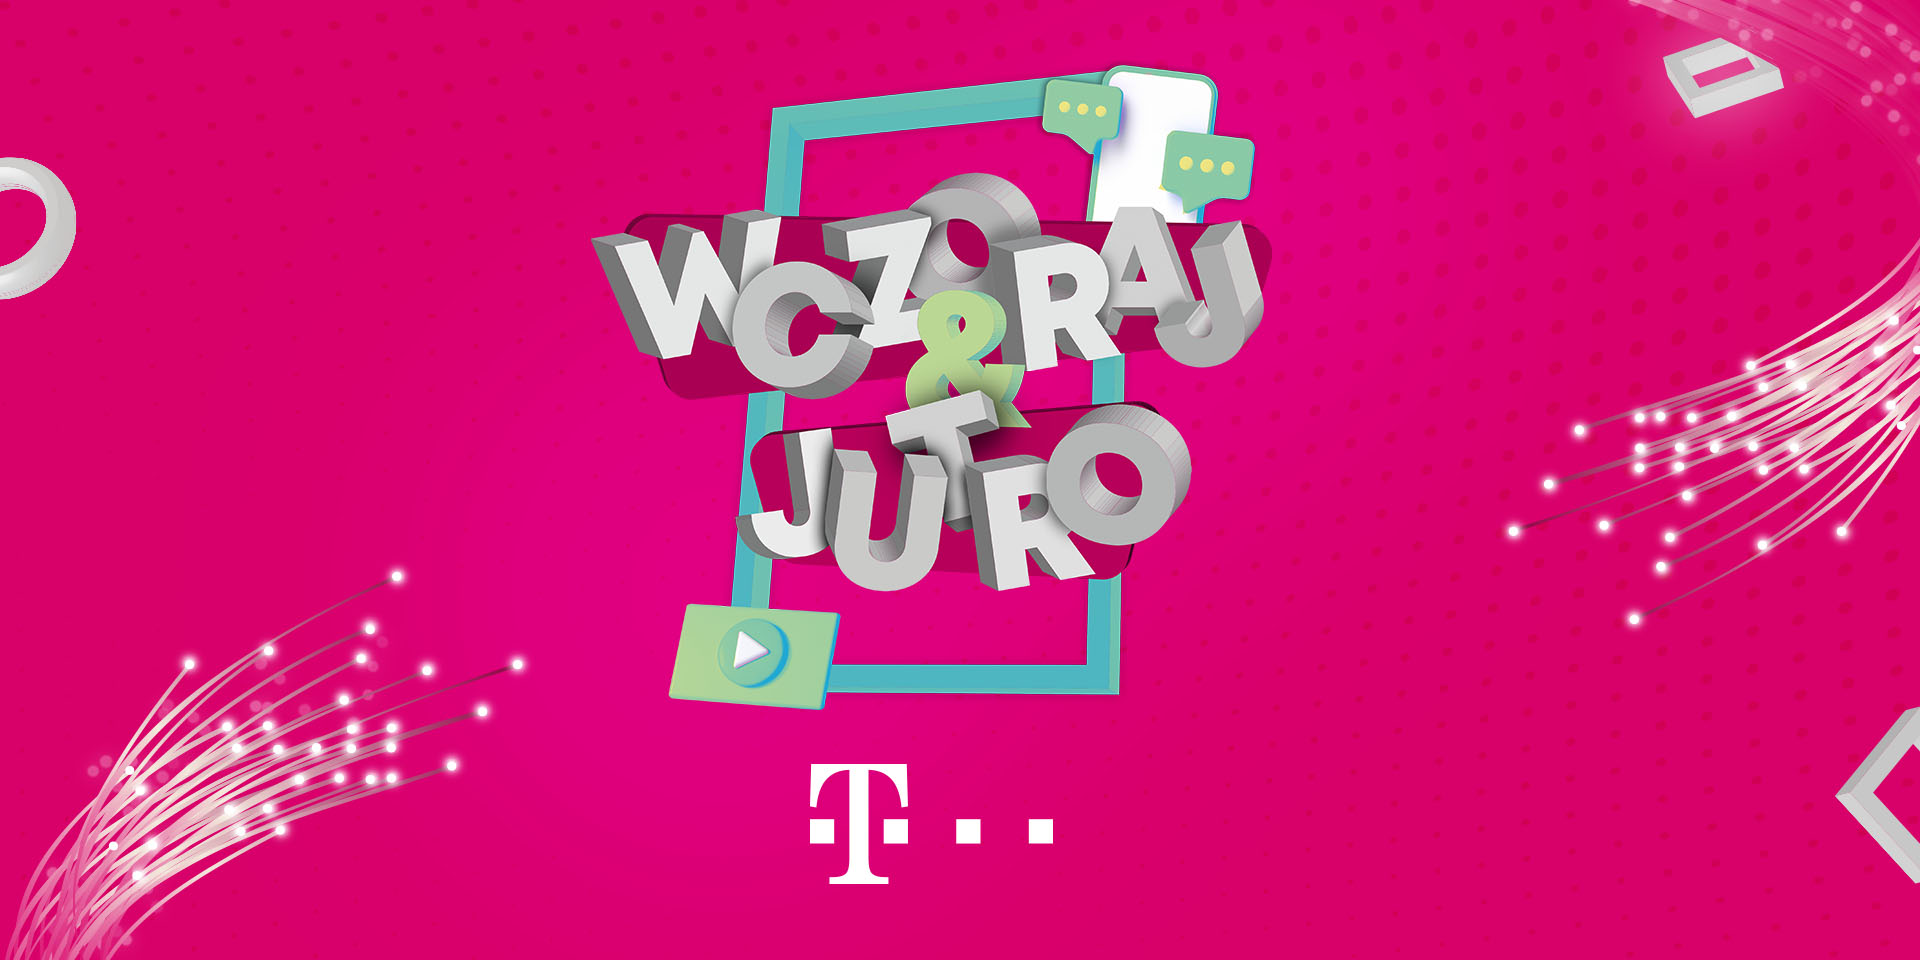 Startuje „Wczoraj & Jutro” – nowy program T-Mobile z udziałem znanych postaci sztuki, sportu i internetu